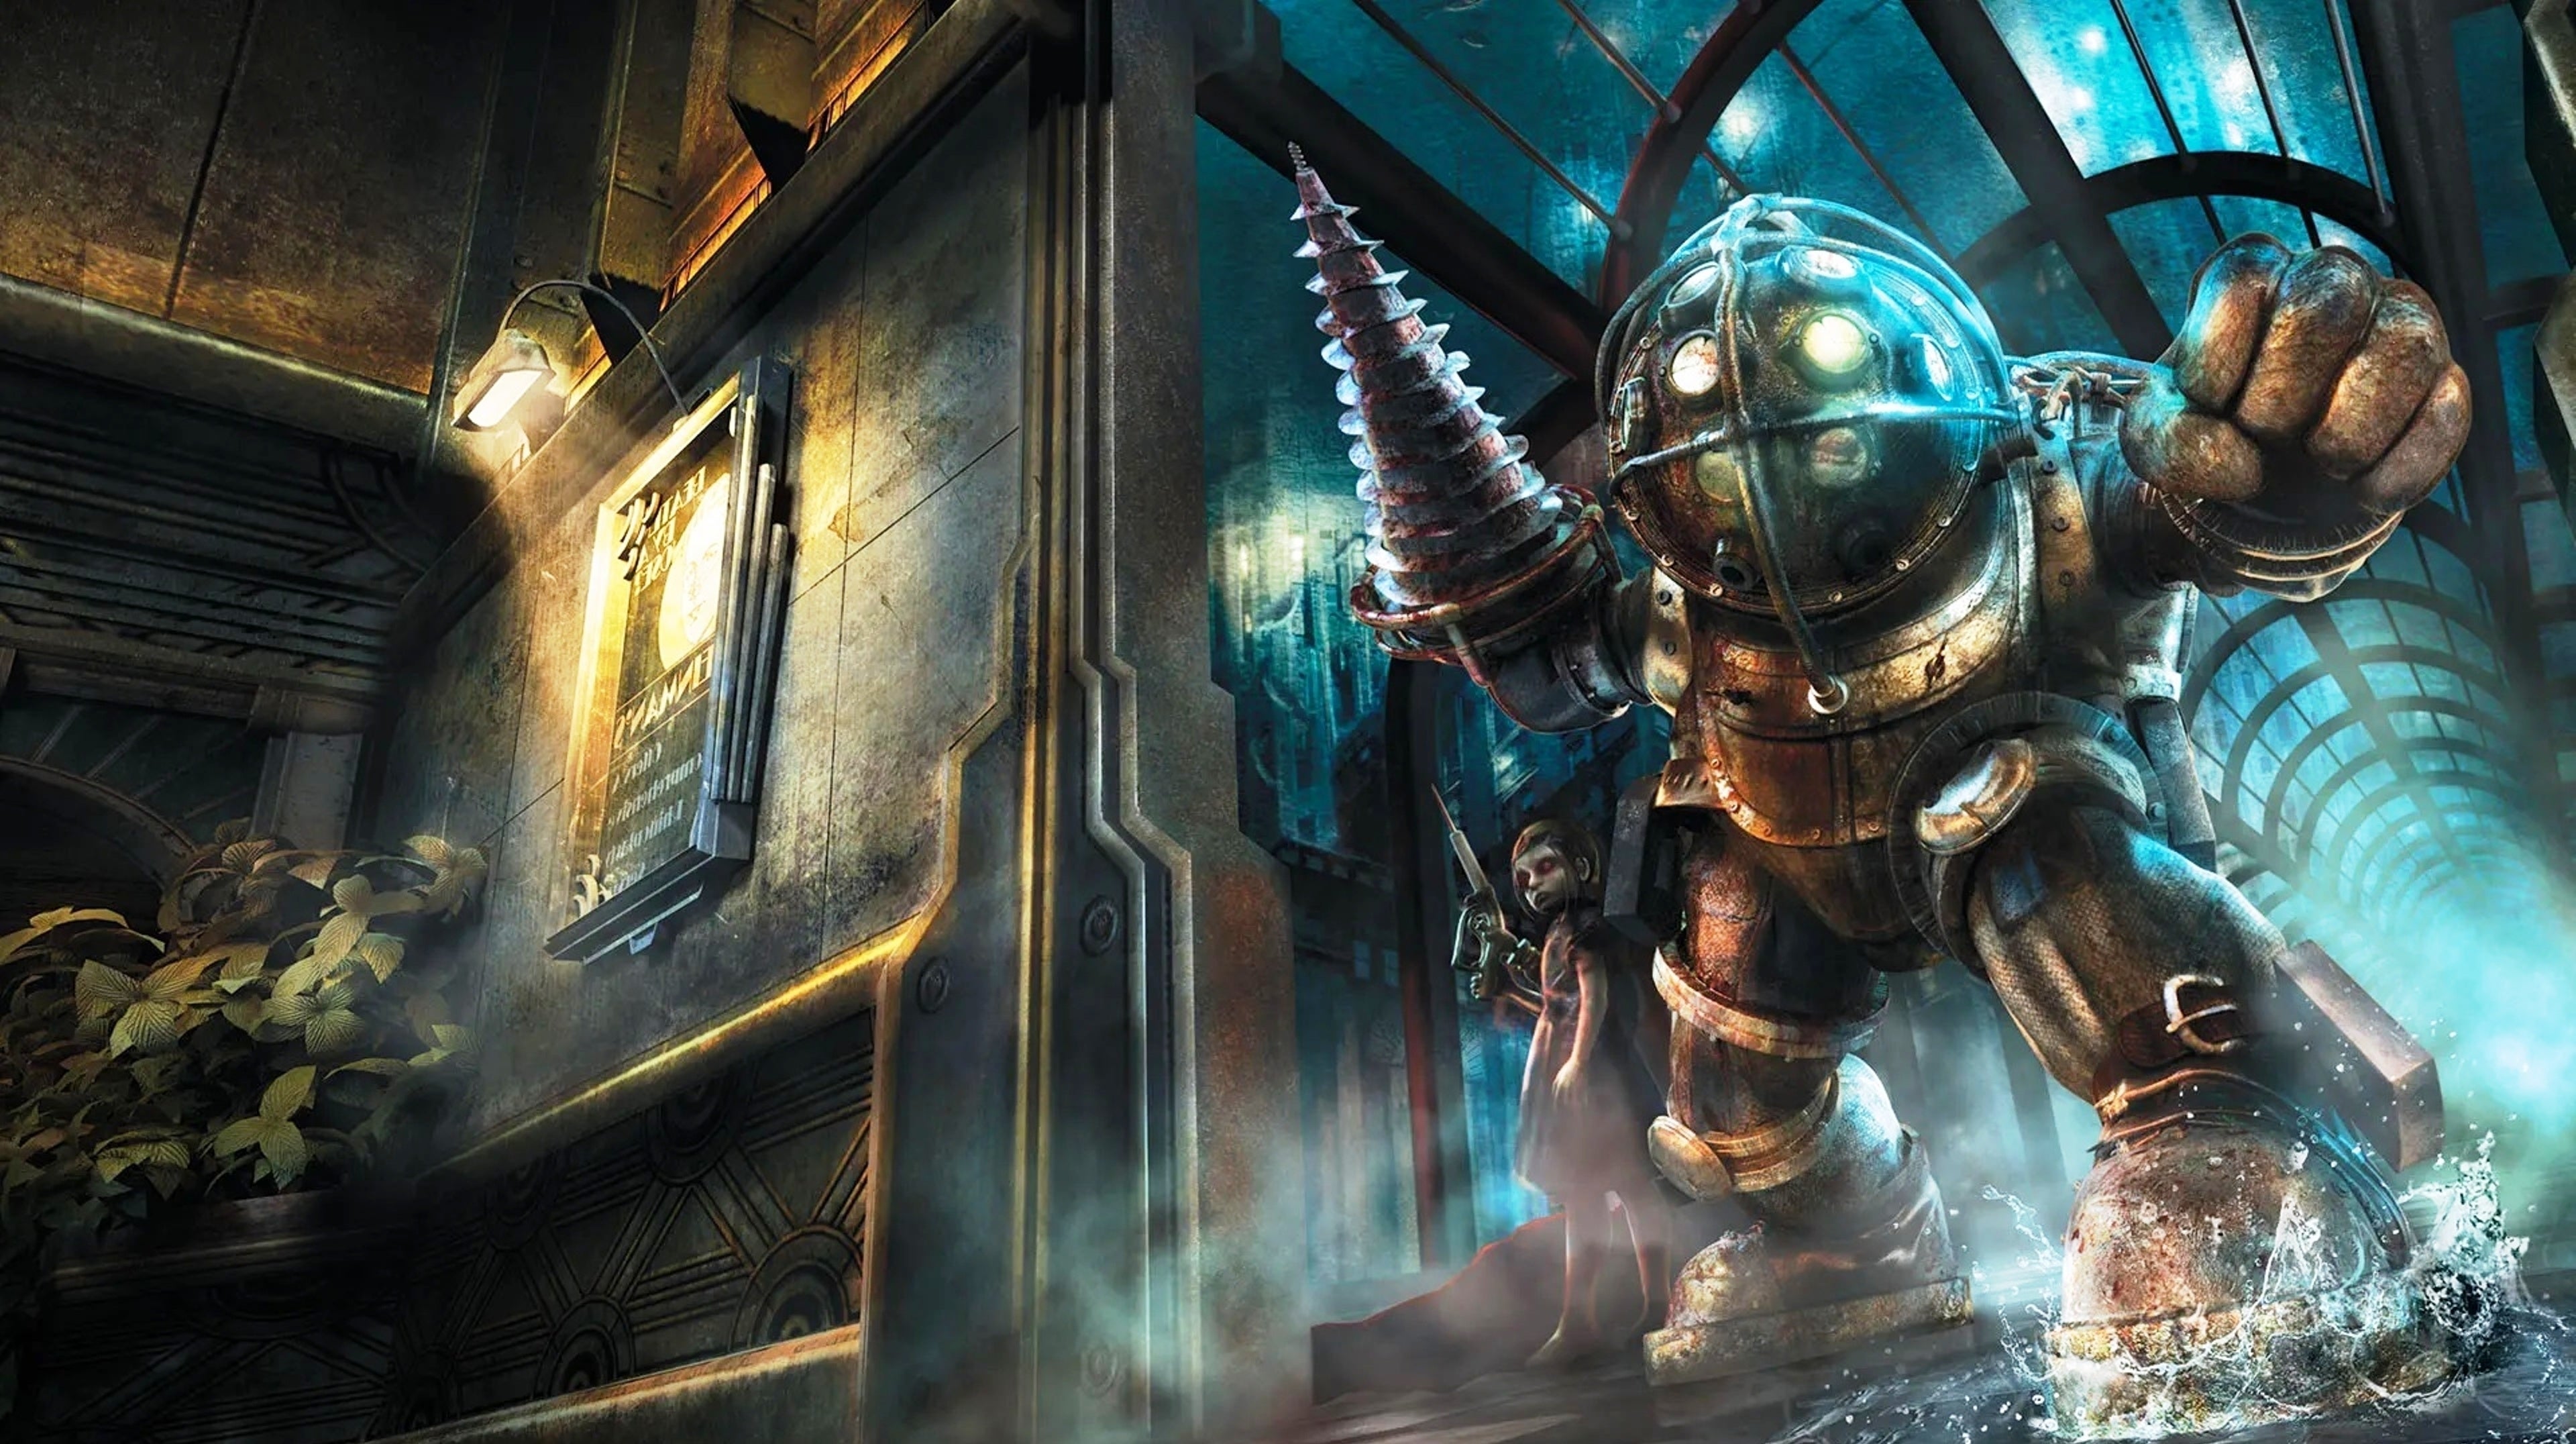 Bilder zu Bioshock 4 könnte ein Open-World-Spiel werden